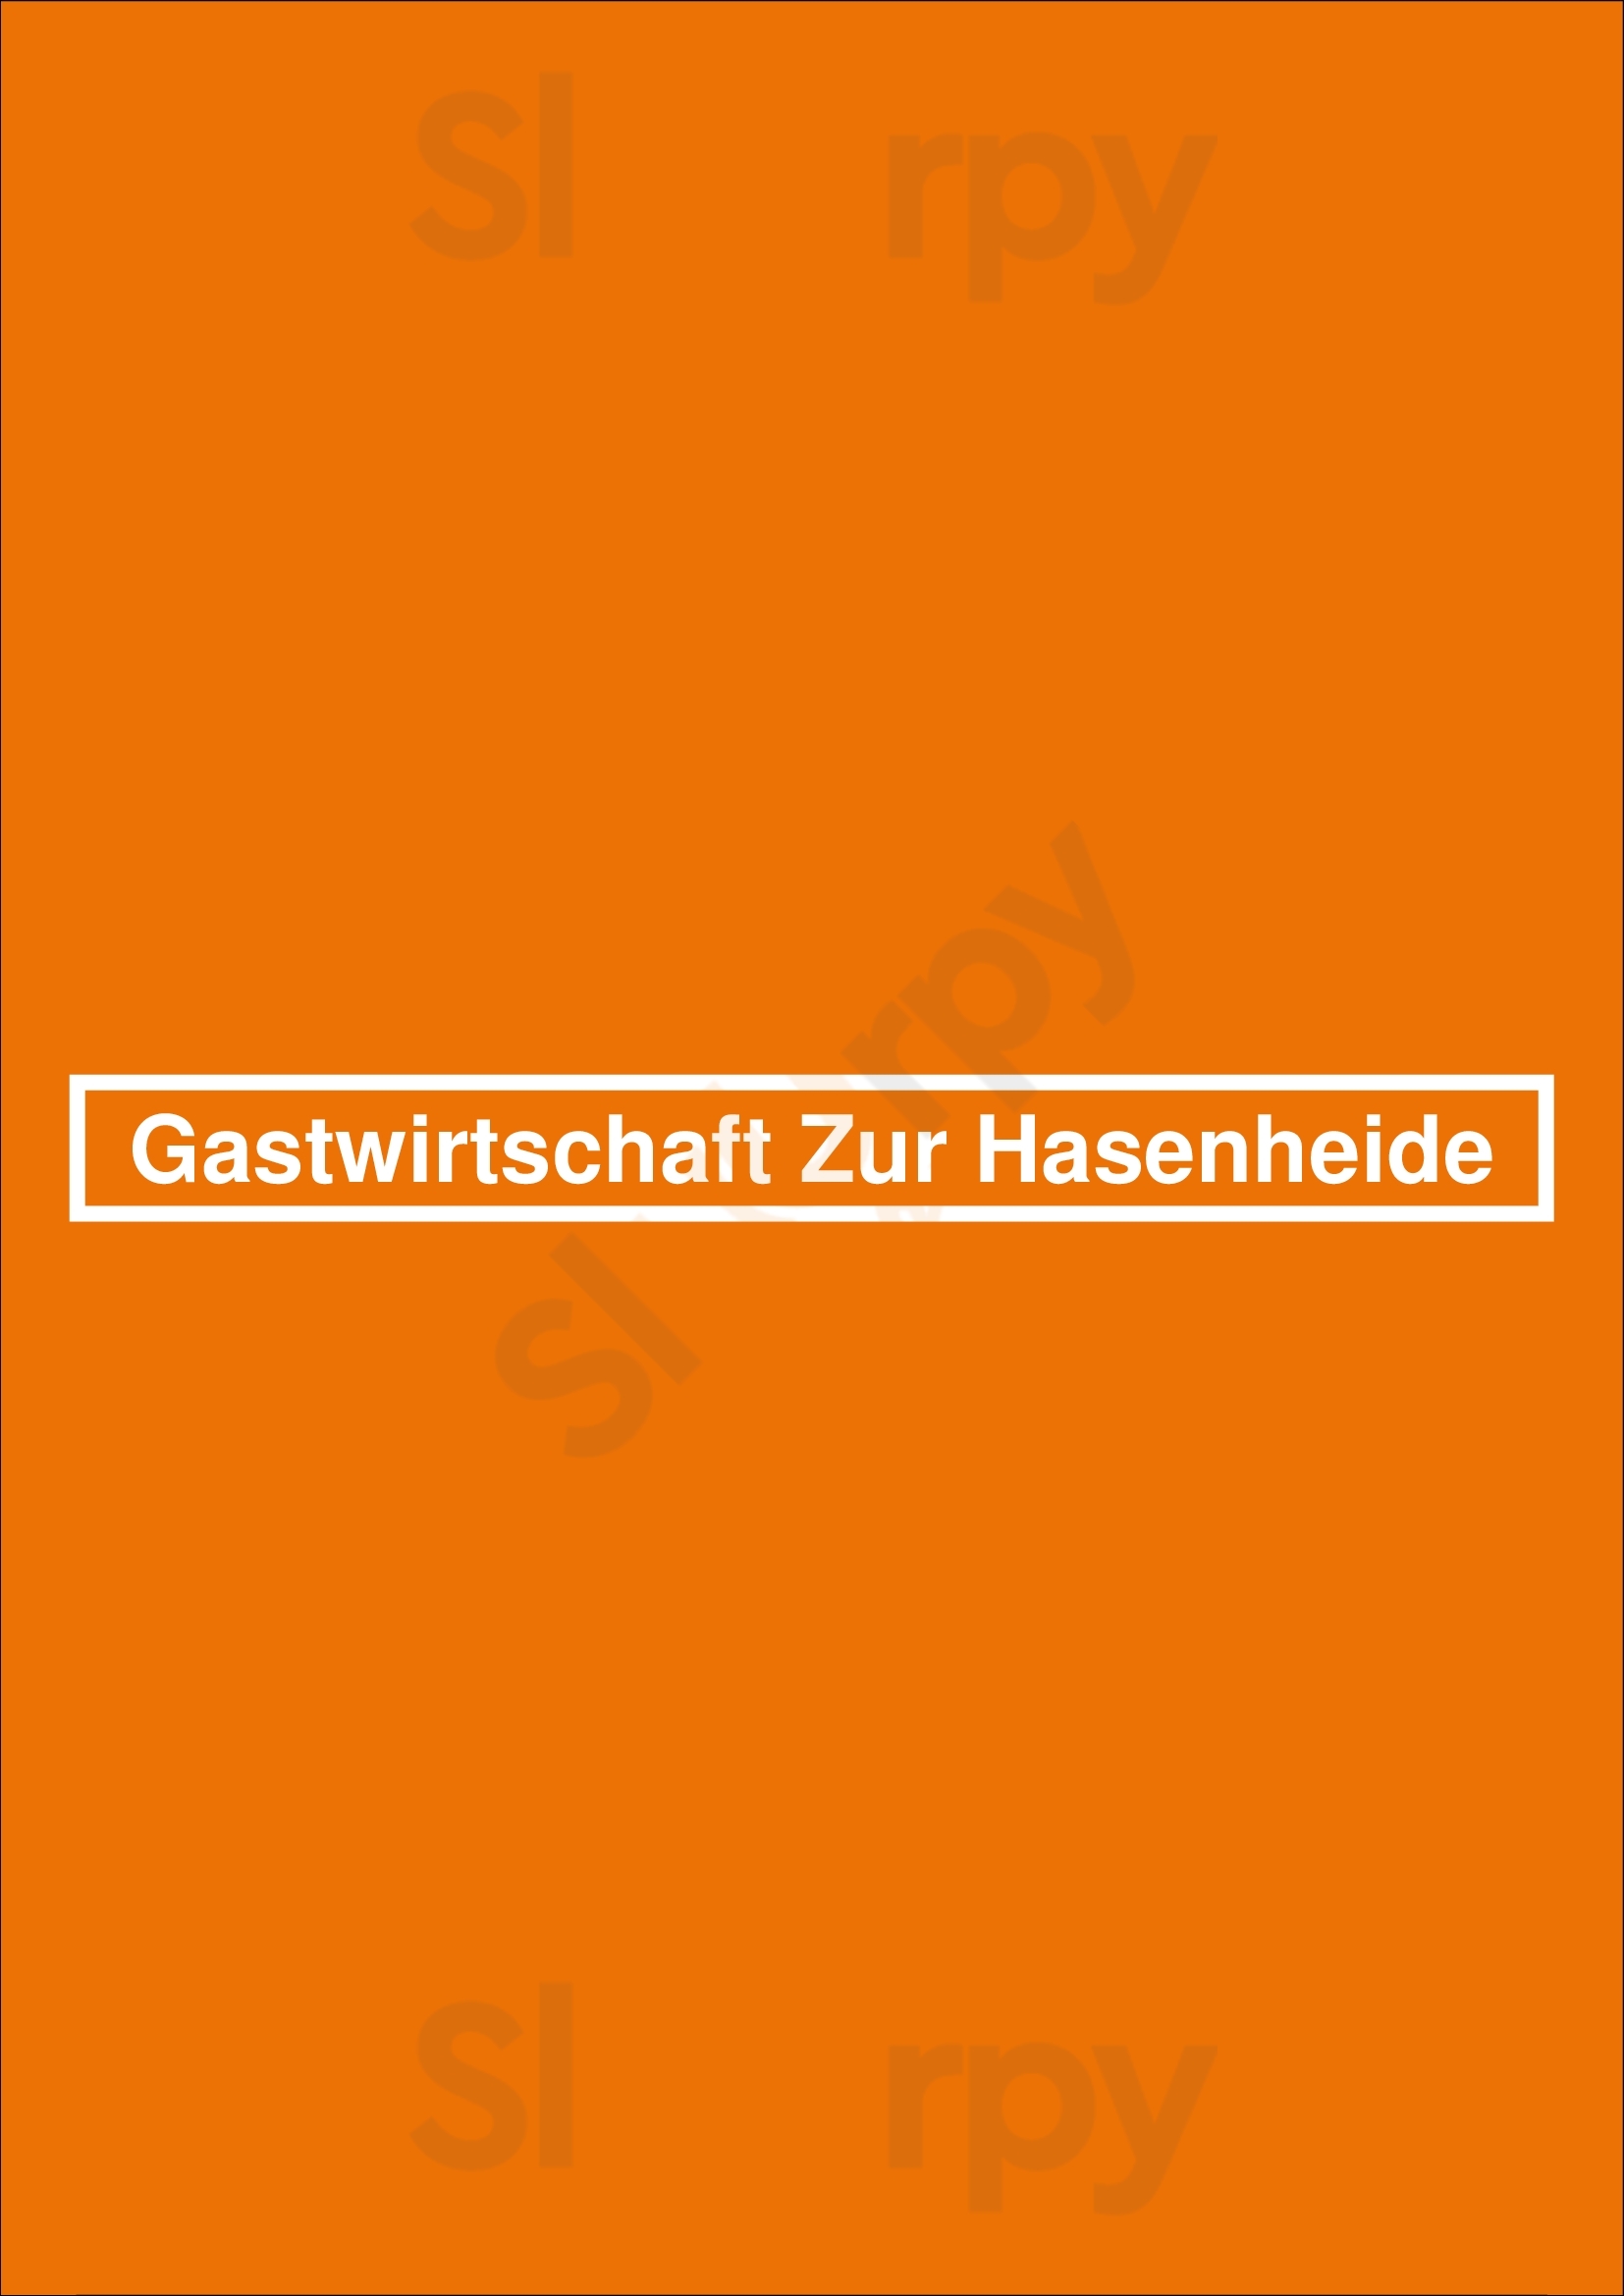 Gastwirtschaft Zur Hasenheide Langenbernsdorf Menu - 1